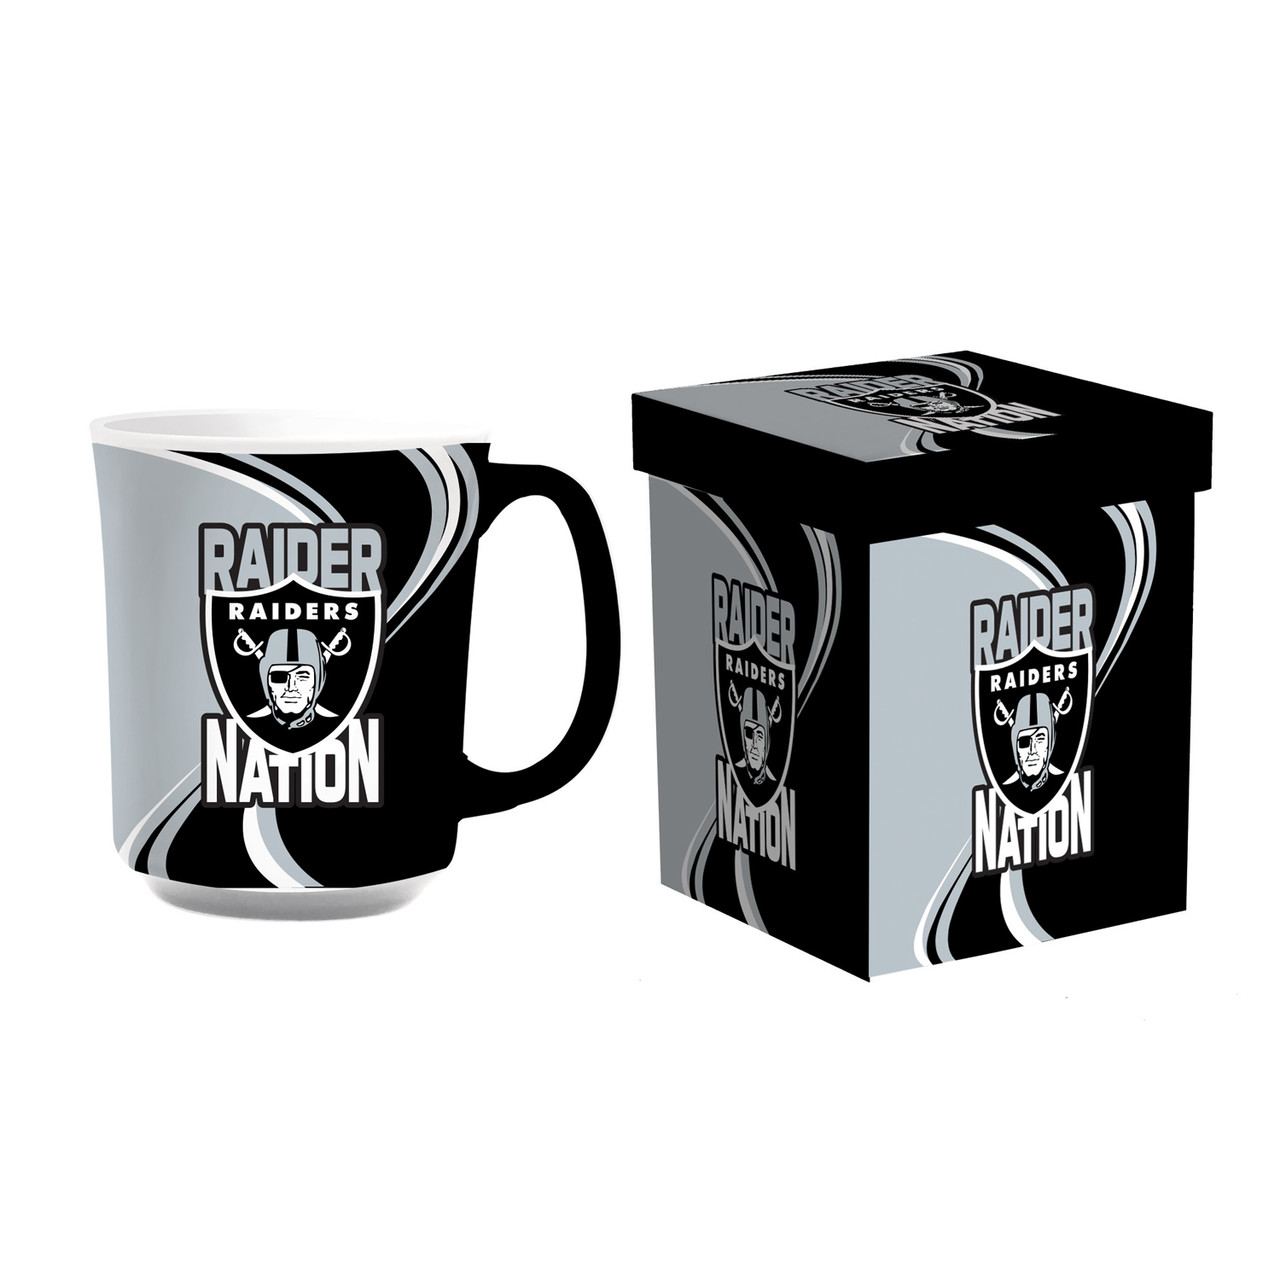 Dallas Cowboys 14oz Ceramic Coffee Mug with Matching Box